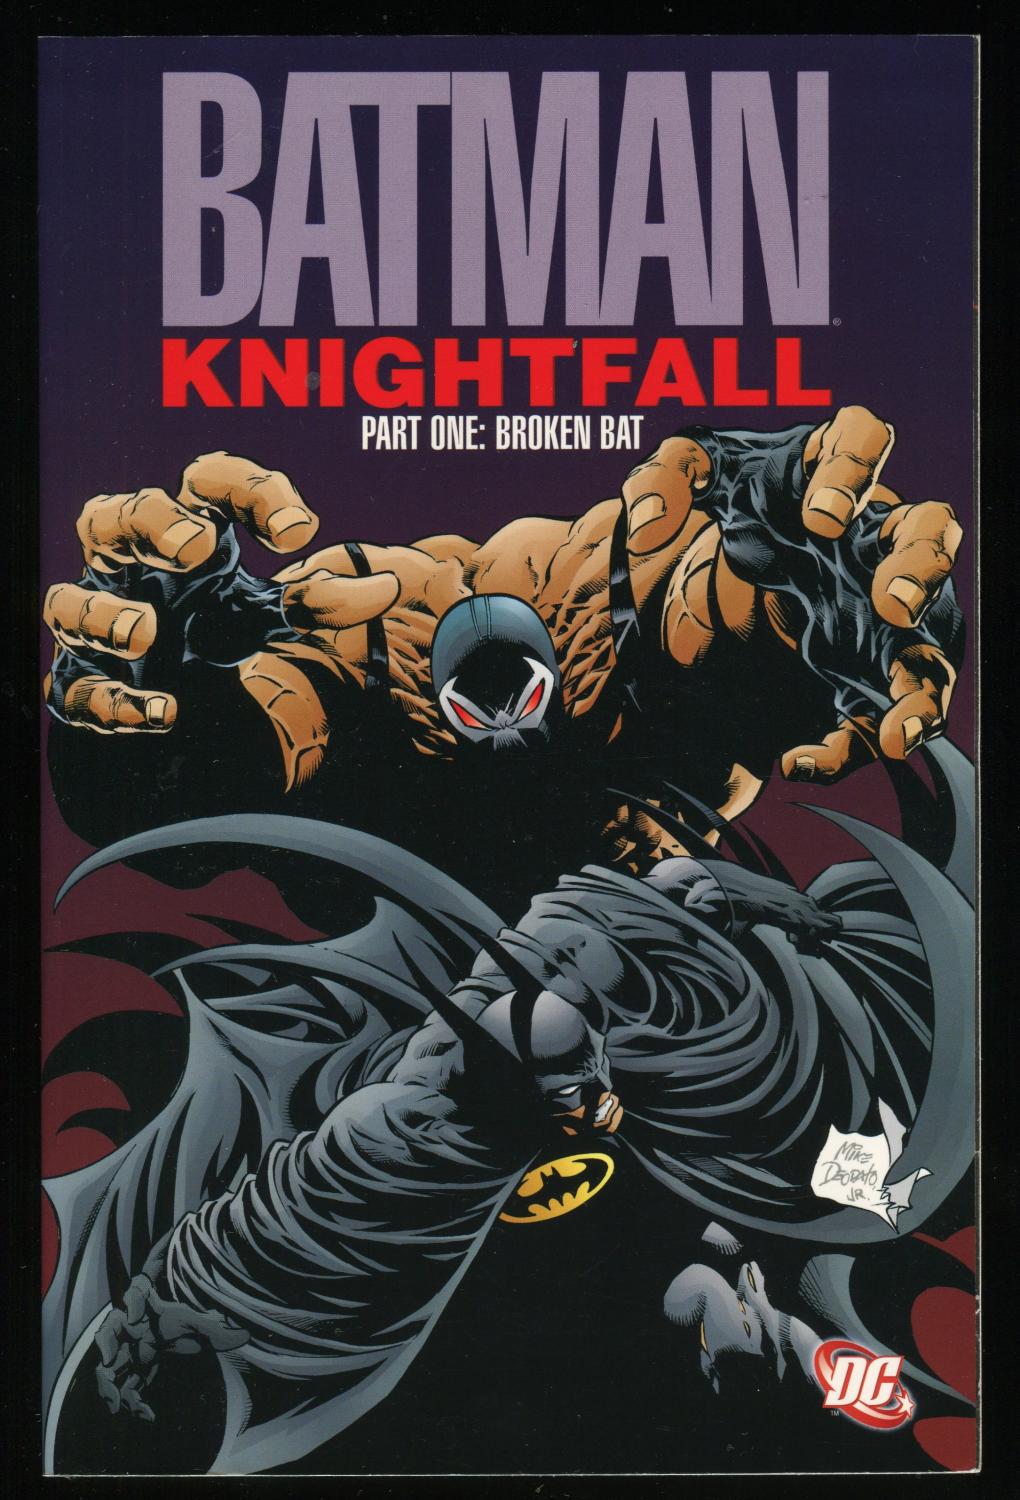 Batman Knightfall Part 1 Broken Bat Trade Paperback TPB Bane Dark Knight  Joker by Doug Moench & Chuck Dixon: Near Fine Soft cover (2000) |  CollectibleEntertainment